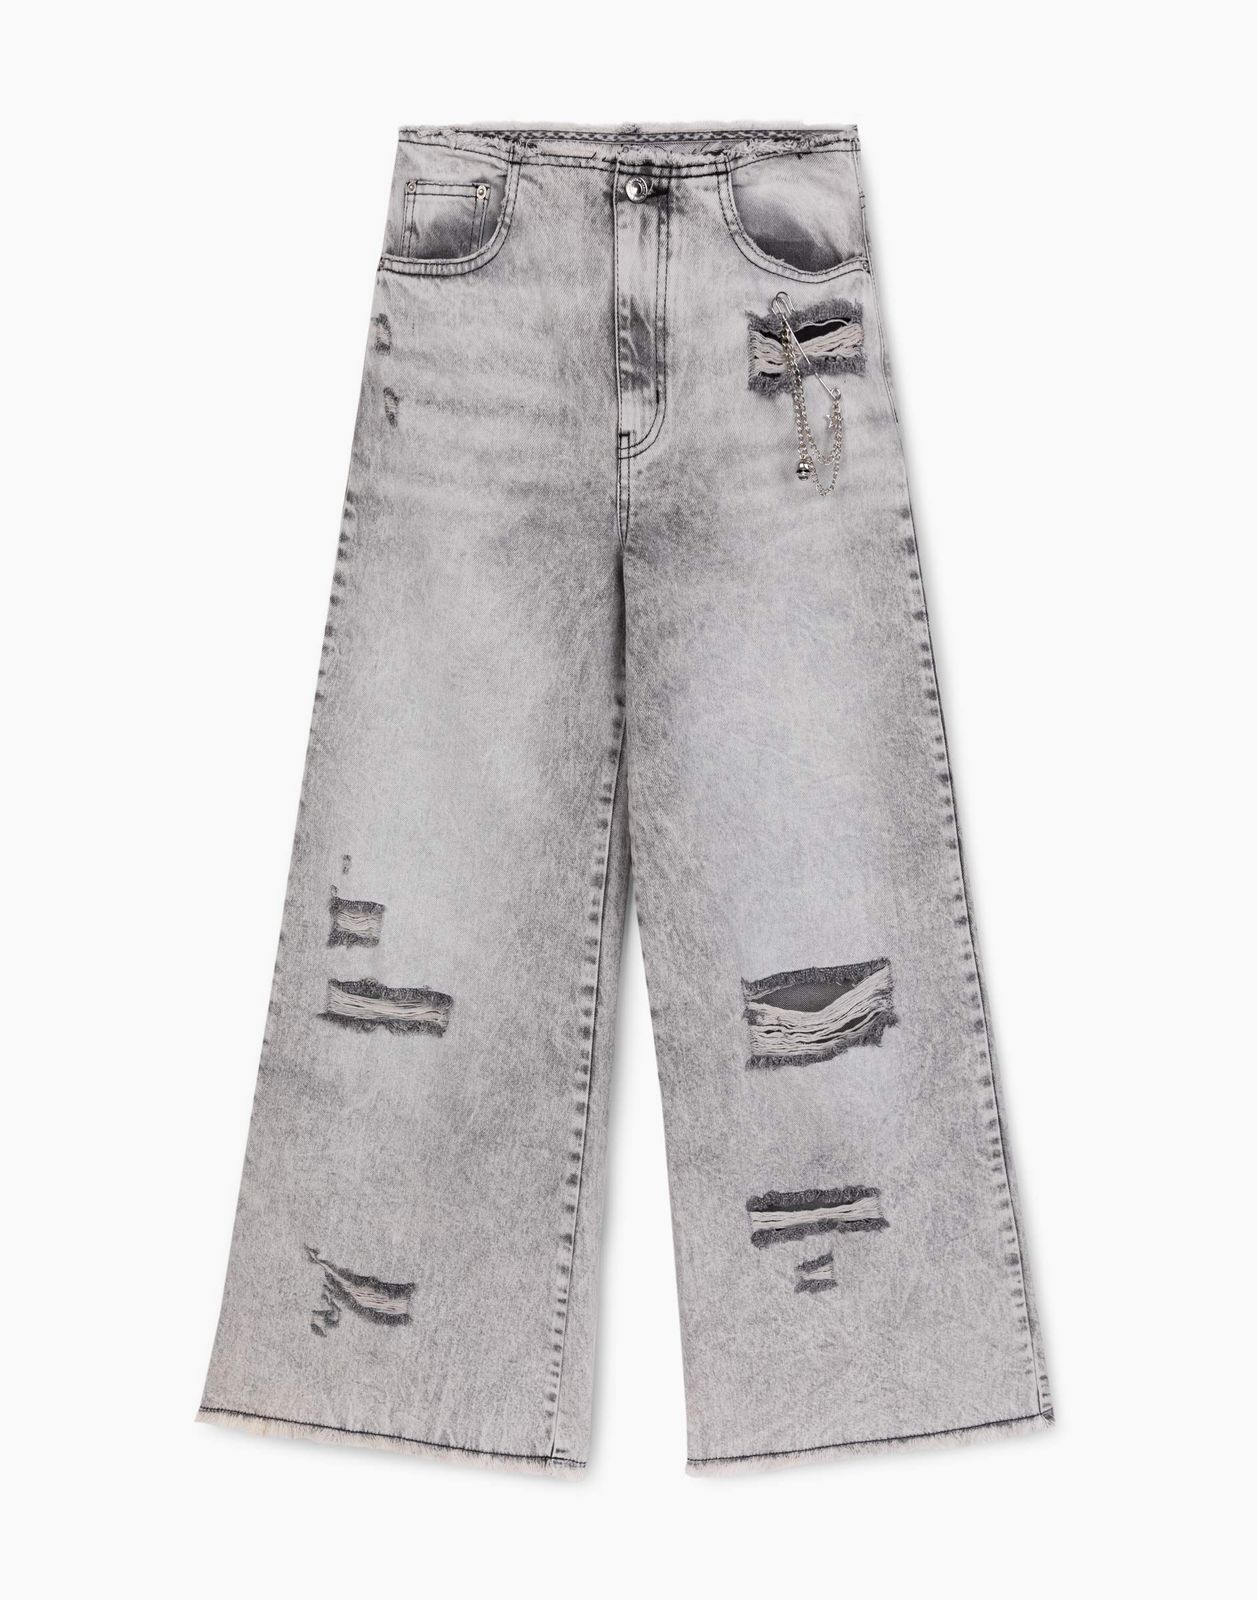 Джинсы Gloria Jeans GJN032569 серый /серый-лайт айс/ 8-9л/134 для девочки джинсы с декоративными дырками для девочки